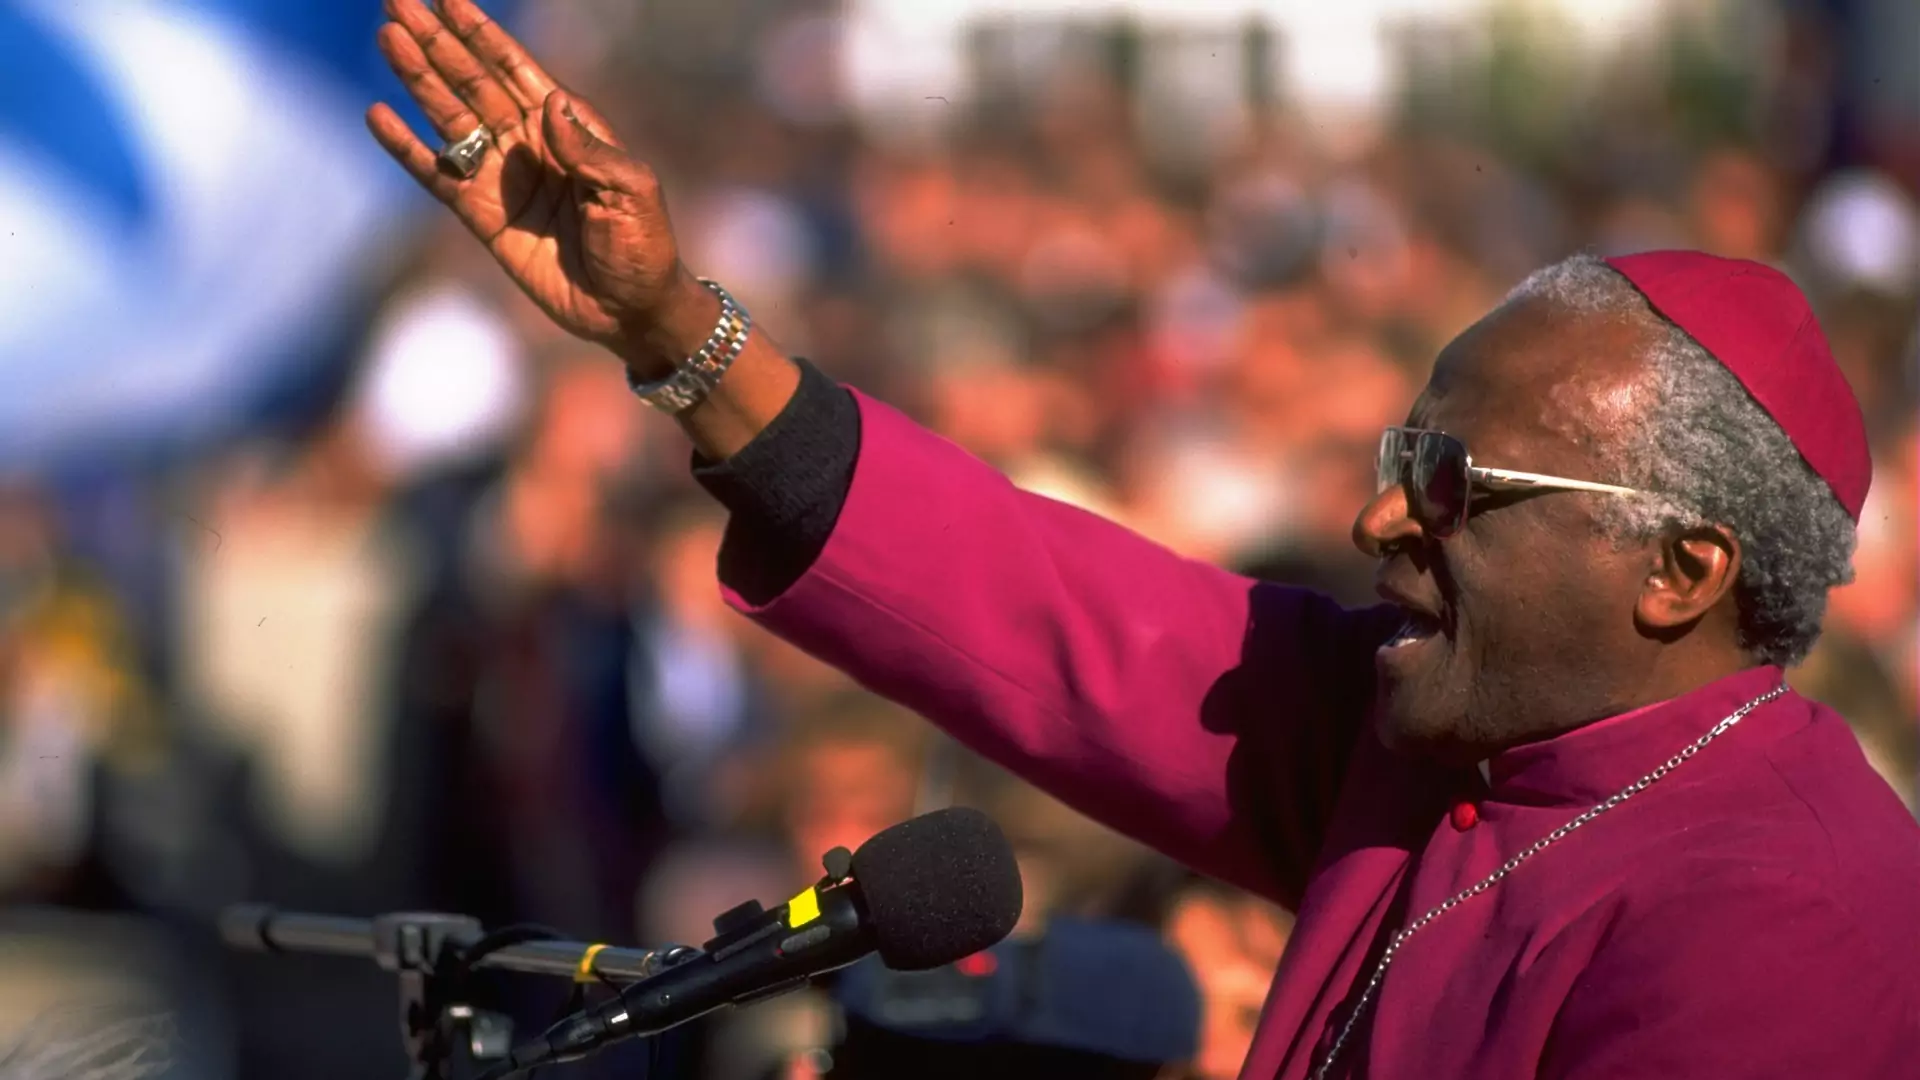 Arcybiskup, który "odmówił pójścia do nieba". Desmond Tutu zadziwił świat